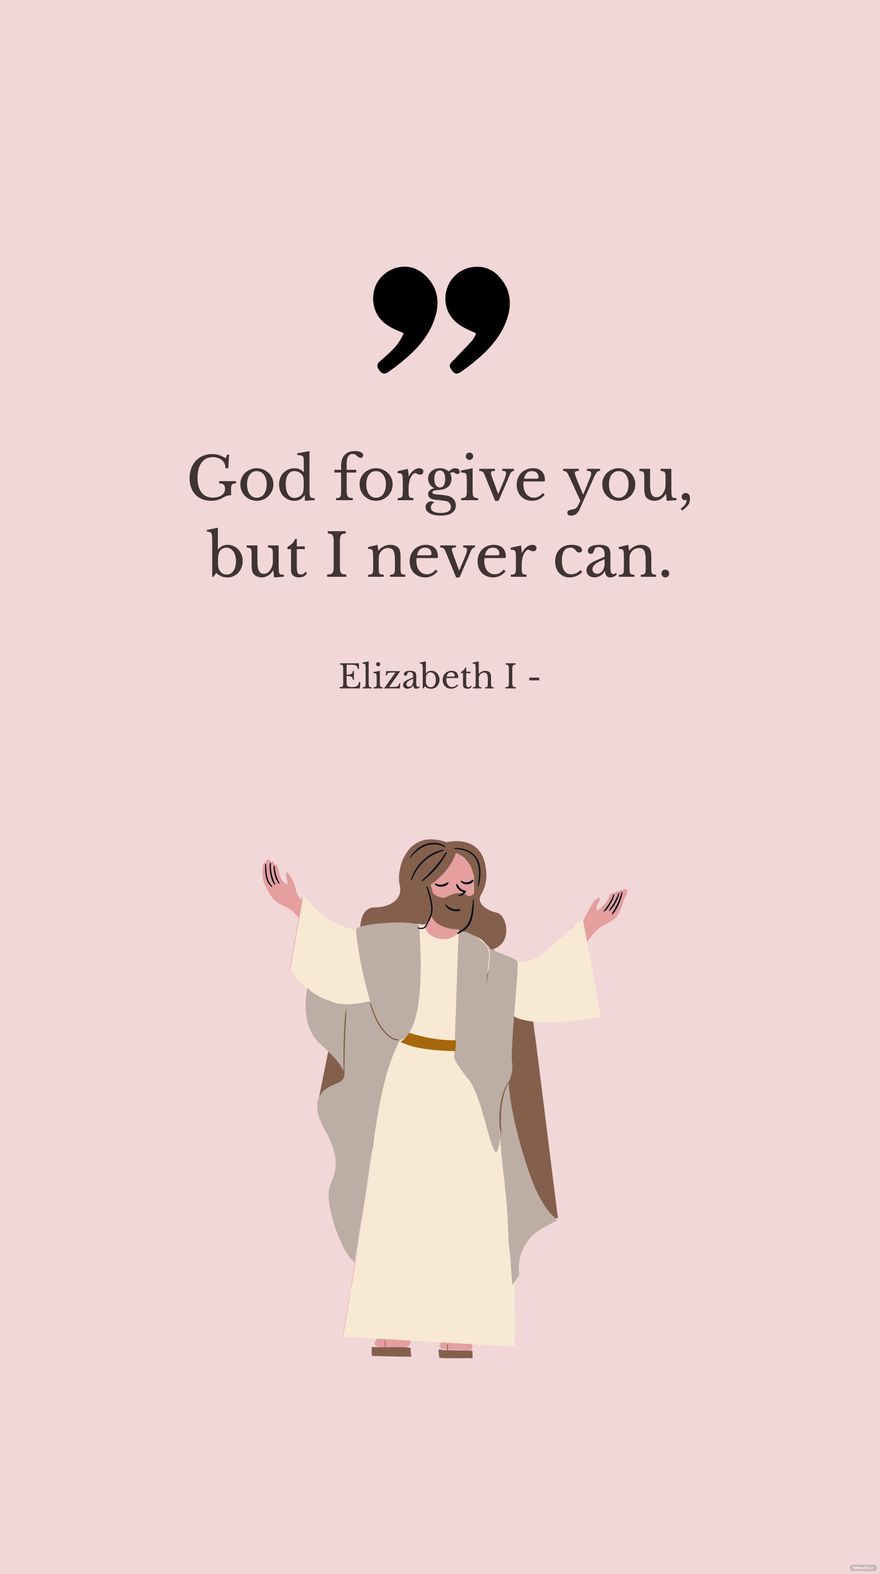 Elizabeth I - God forgive you, but I never can. in JPG